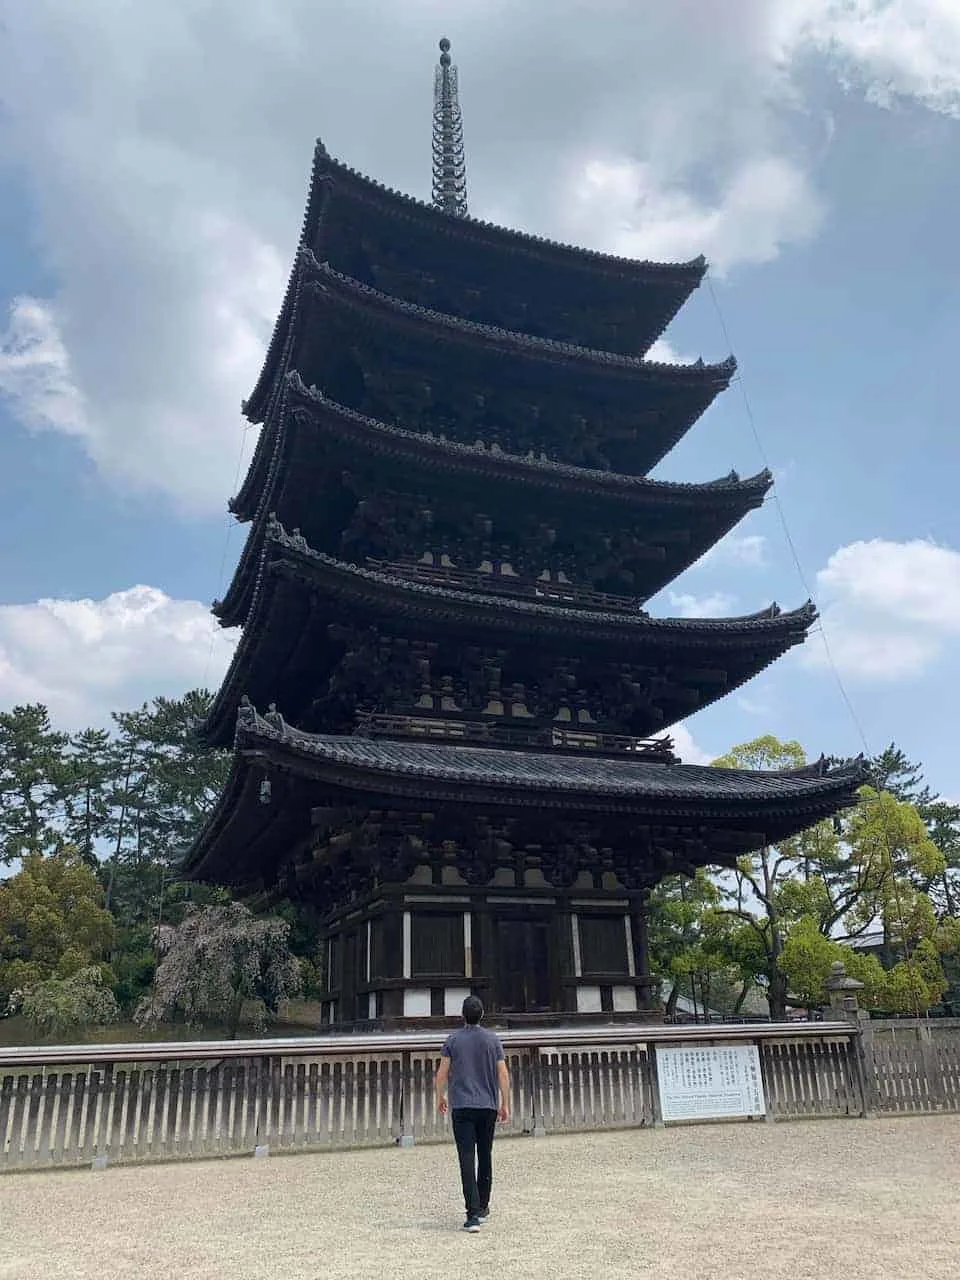 Kofukuji Five Storied Pagoda